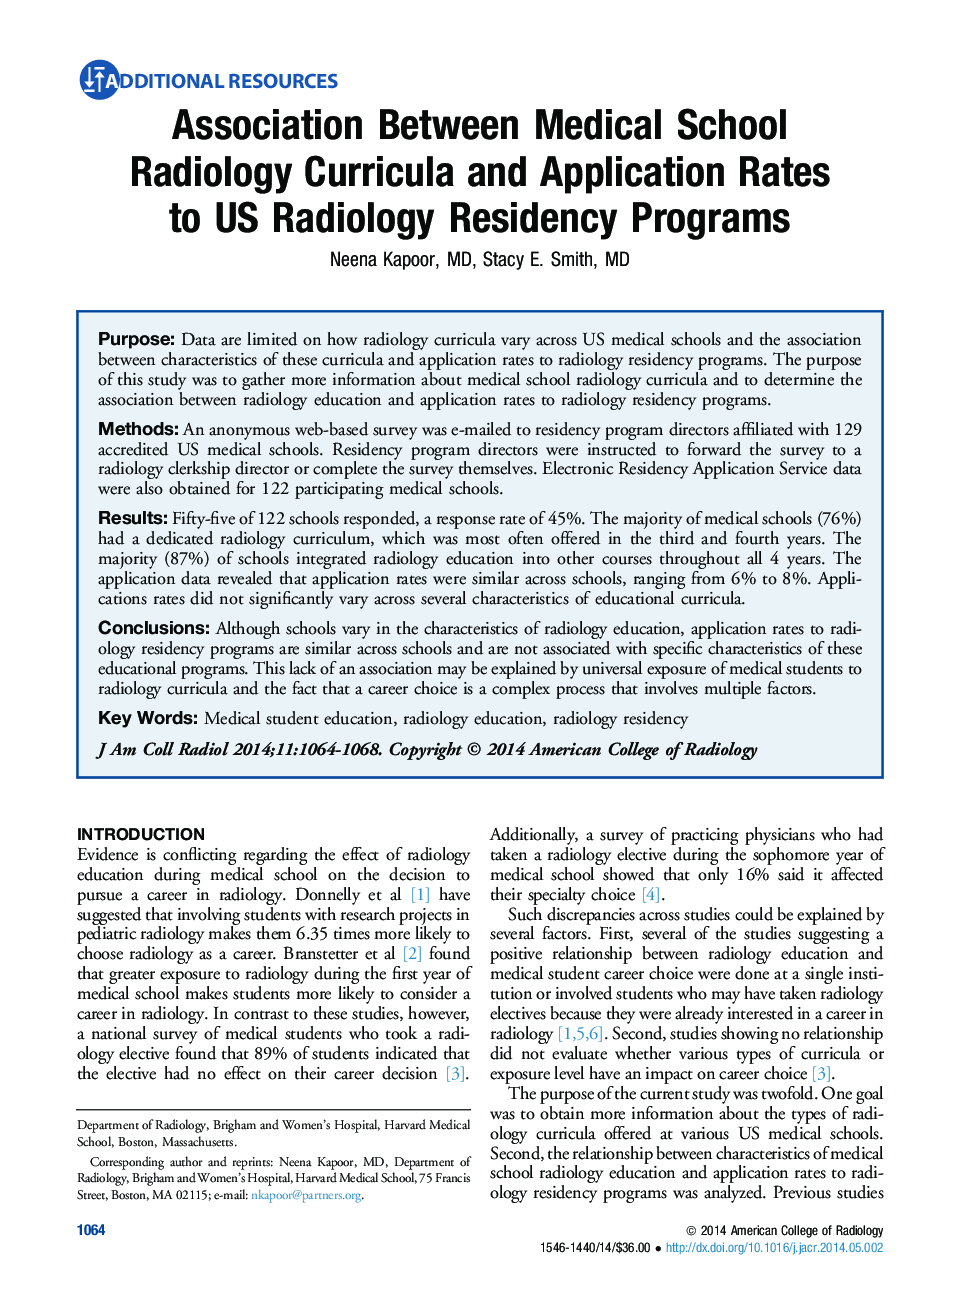 ارتباط بین برنامه های درمانی رادیولوژی دانشکده پزشکی و برنامه های کاربردی برای برنامه های اقامت در ایالات متحده رادیولوژی 